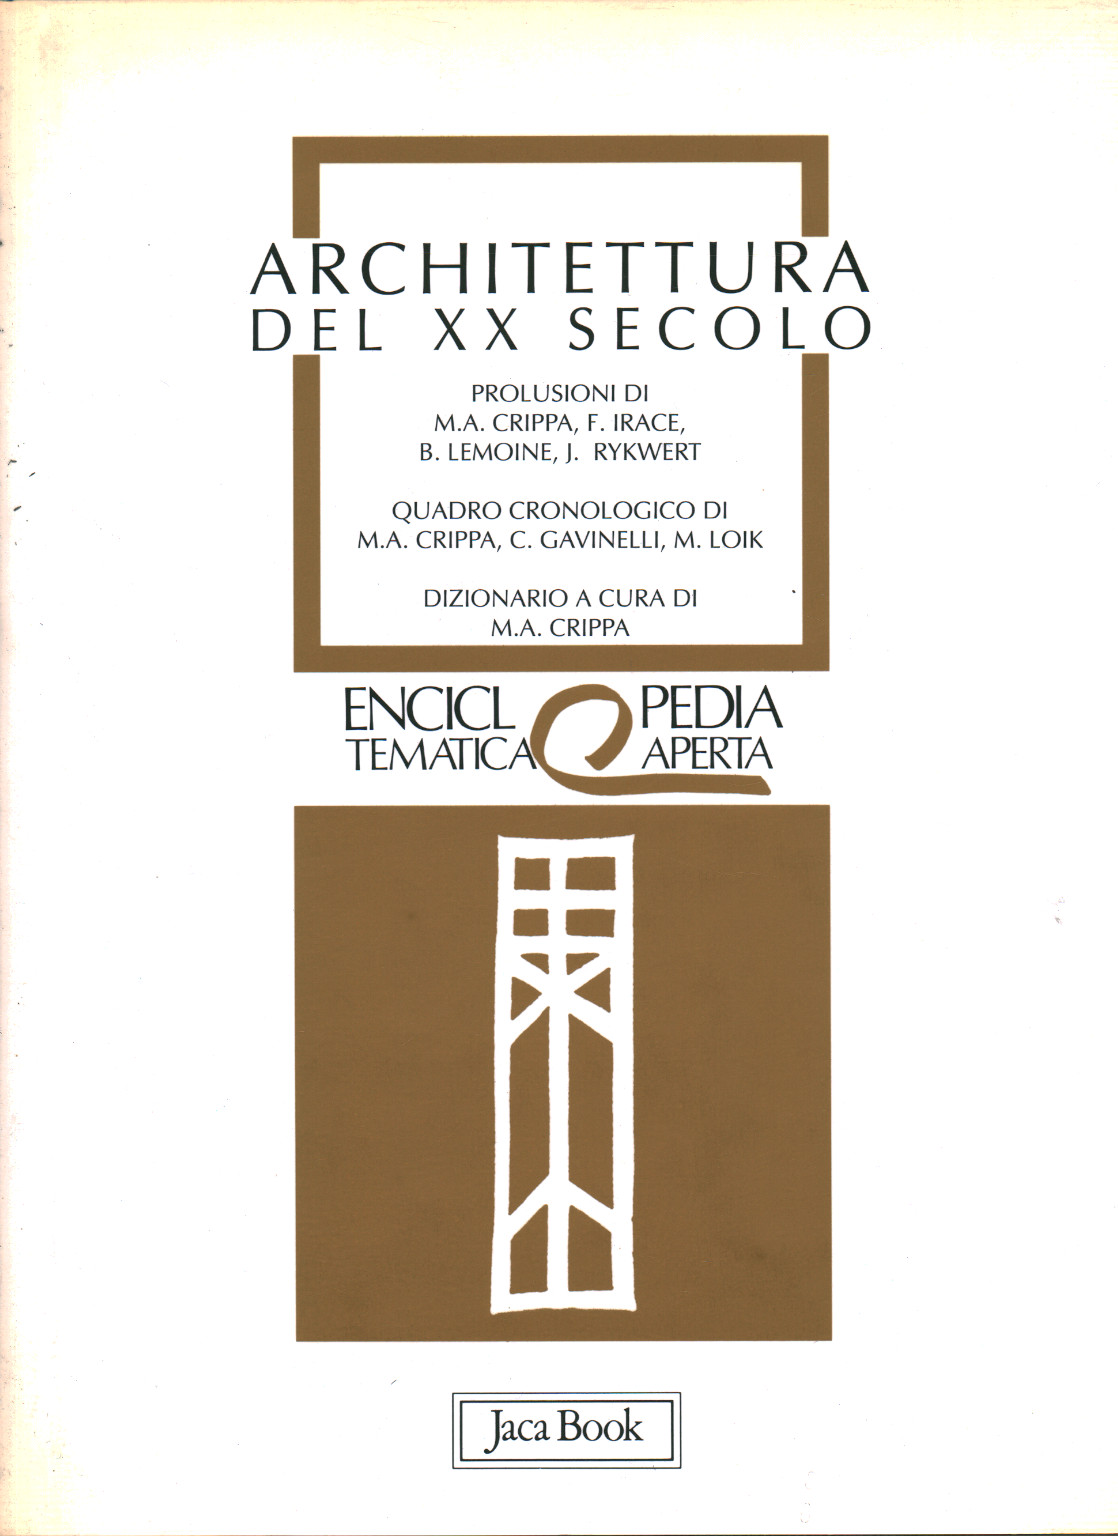 Architettura del XX Secolo, s.a.